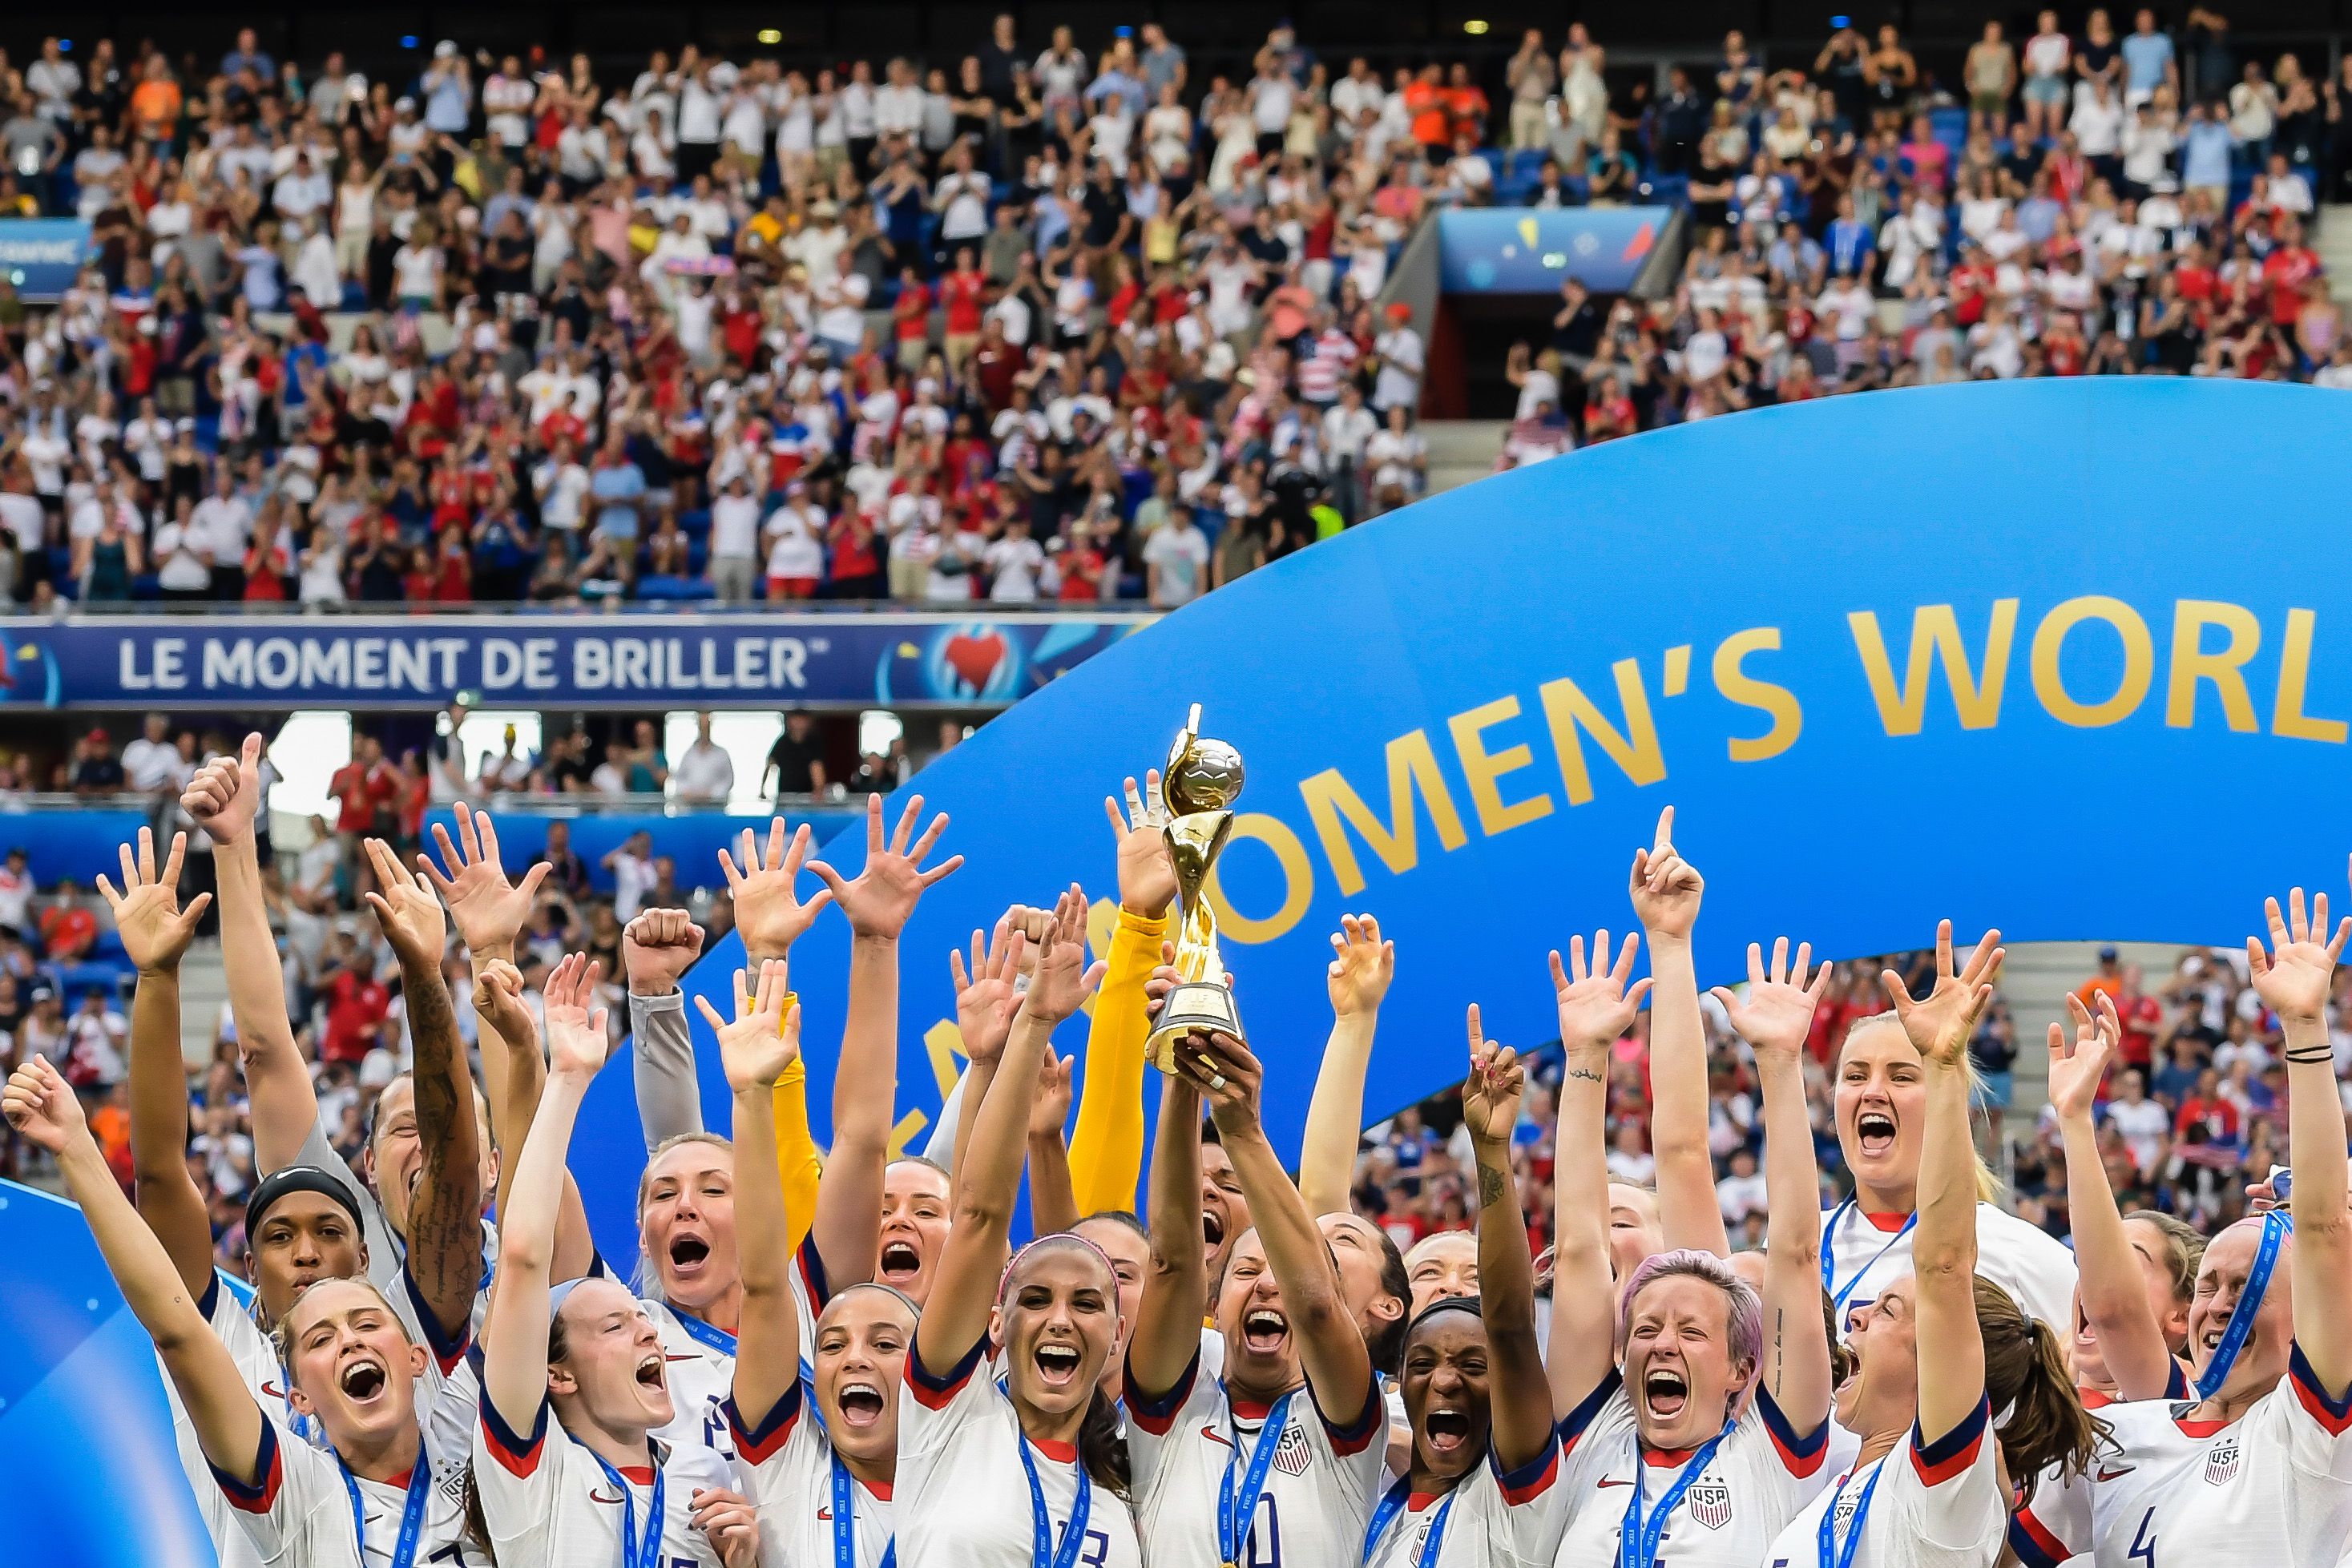 Com previsão de 1 bilhão de telespectadores, vem aí a maior Copa do Mundo  Feminina da história - NWB